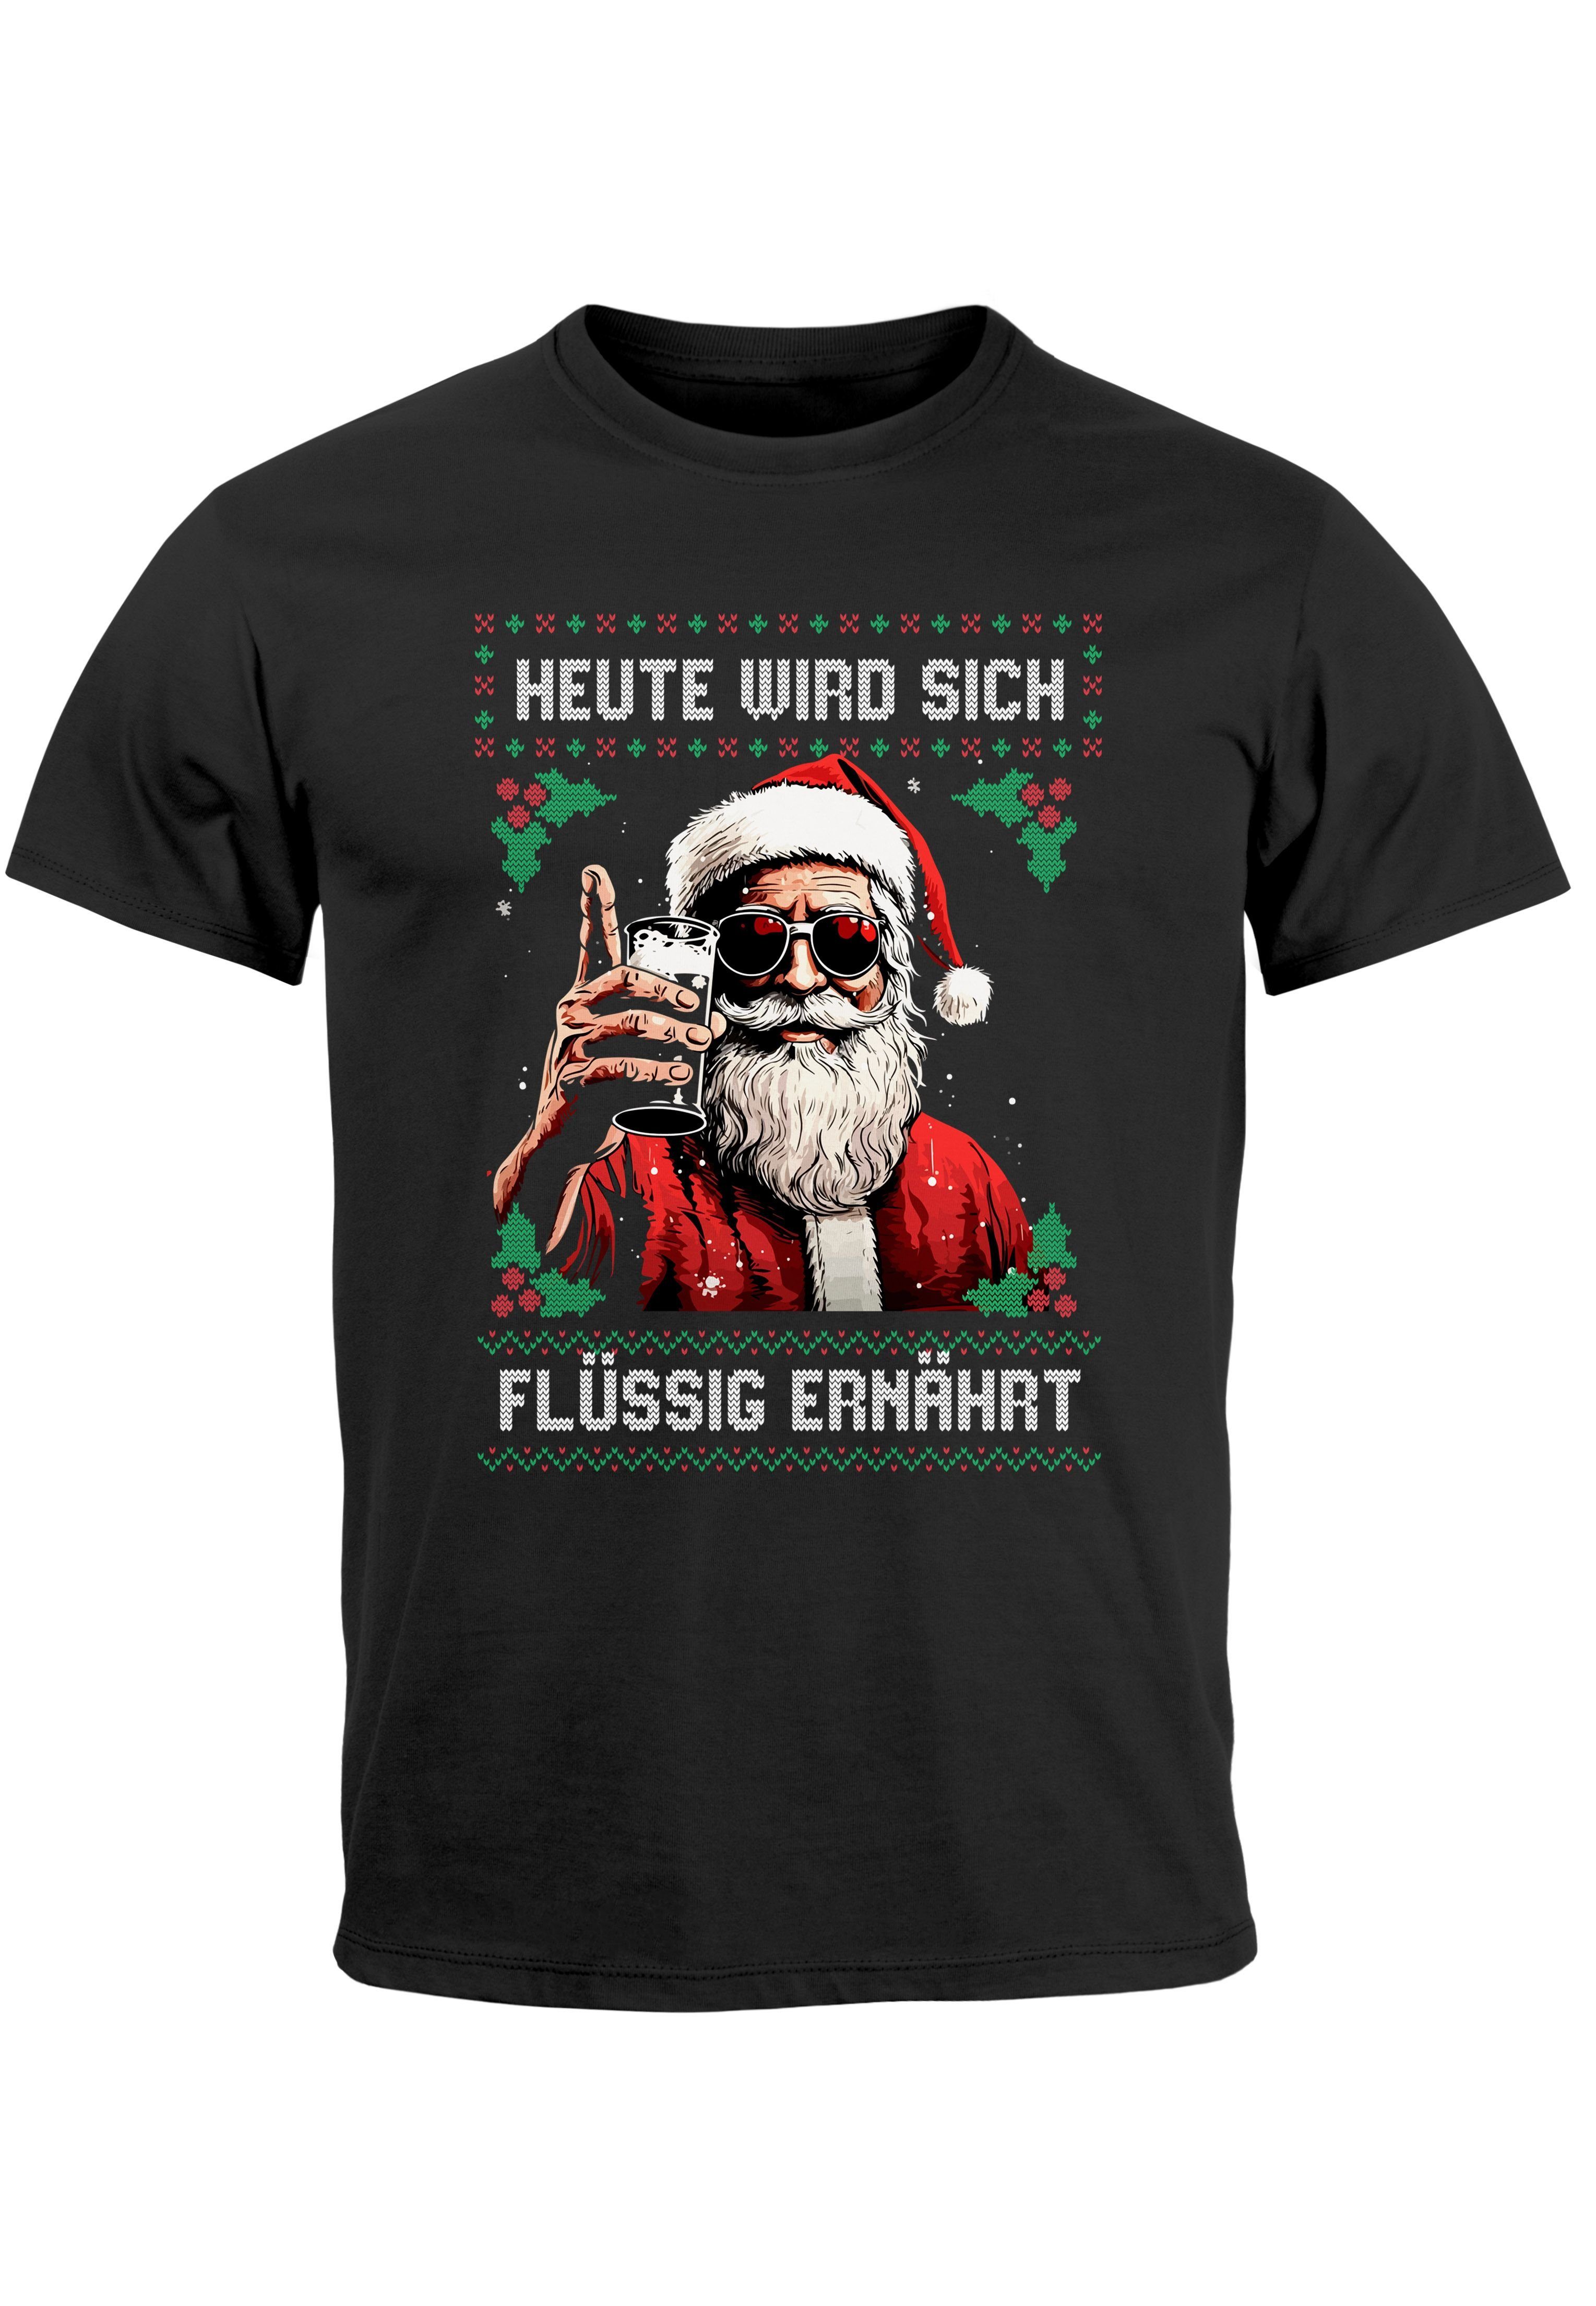 MoonWorks Print-Shirt Herren T-Shirt Weihnachten Spruch lustig Heute wird sich flüssig ernäh mit Print